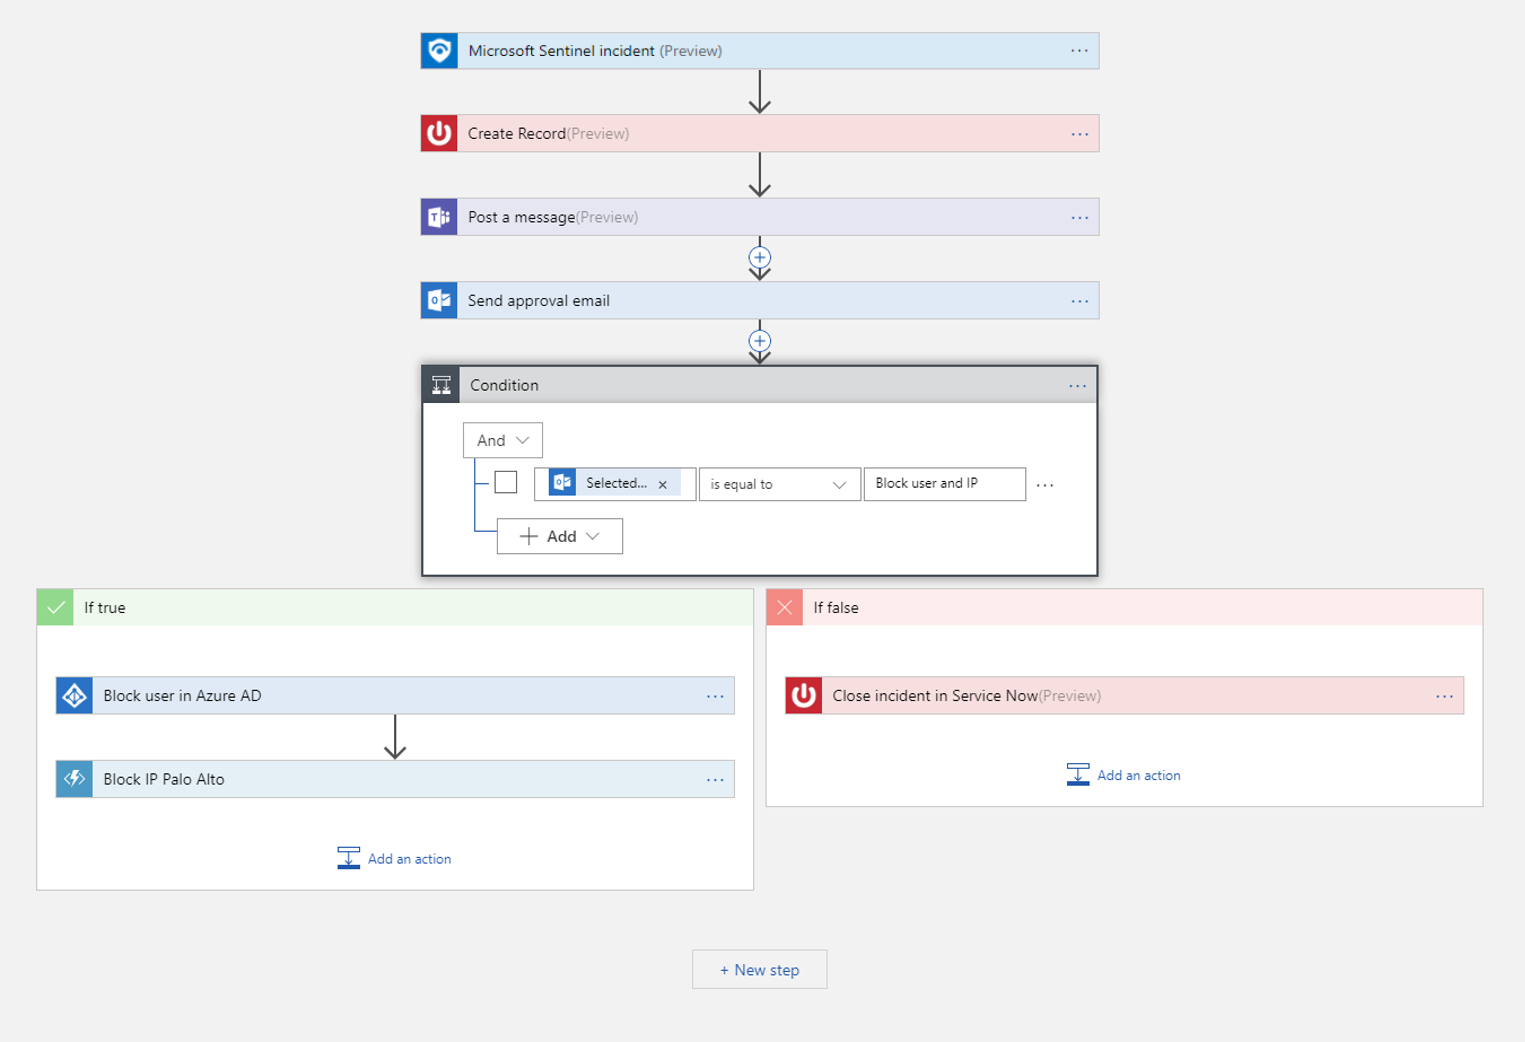 Captura de un ejemplo de flujo de trabajo automatizado en Azure Logic Apps, donde un incidente puede desencadenar diferentes acciones.